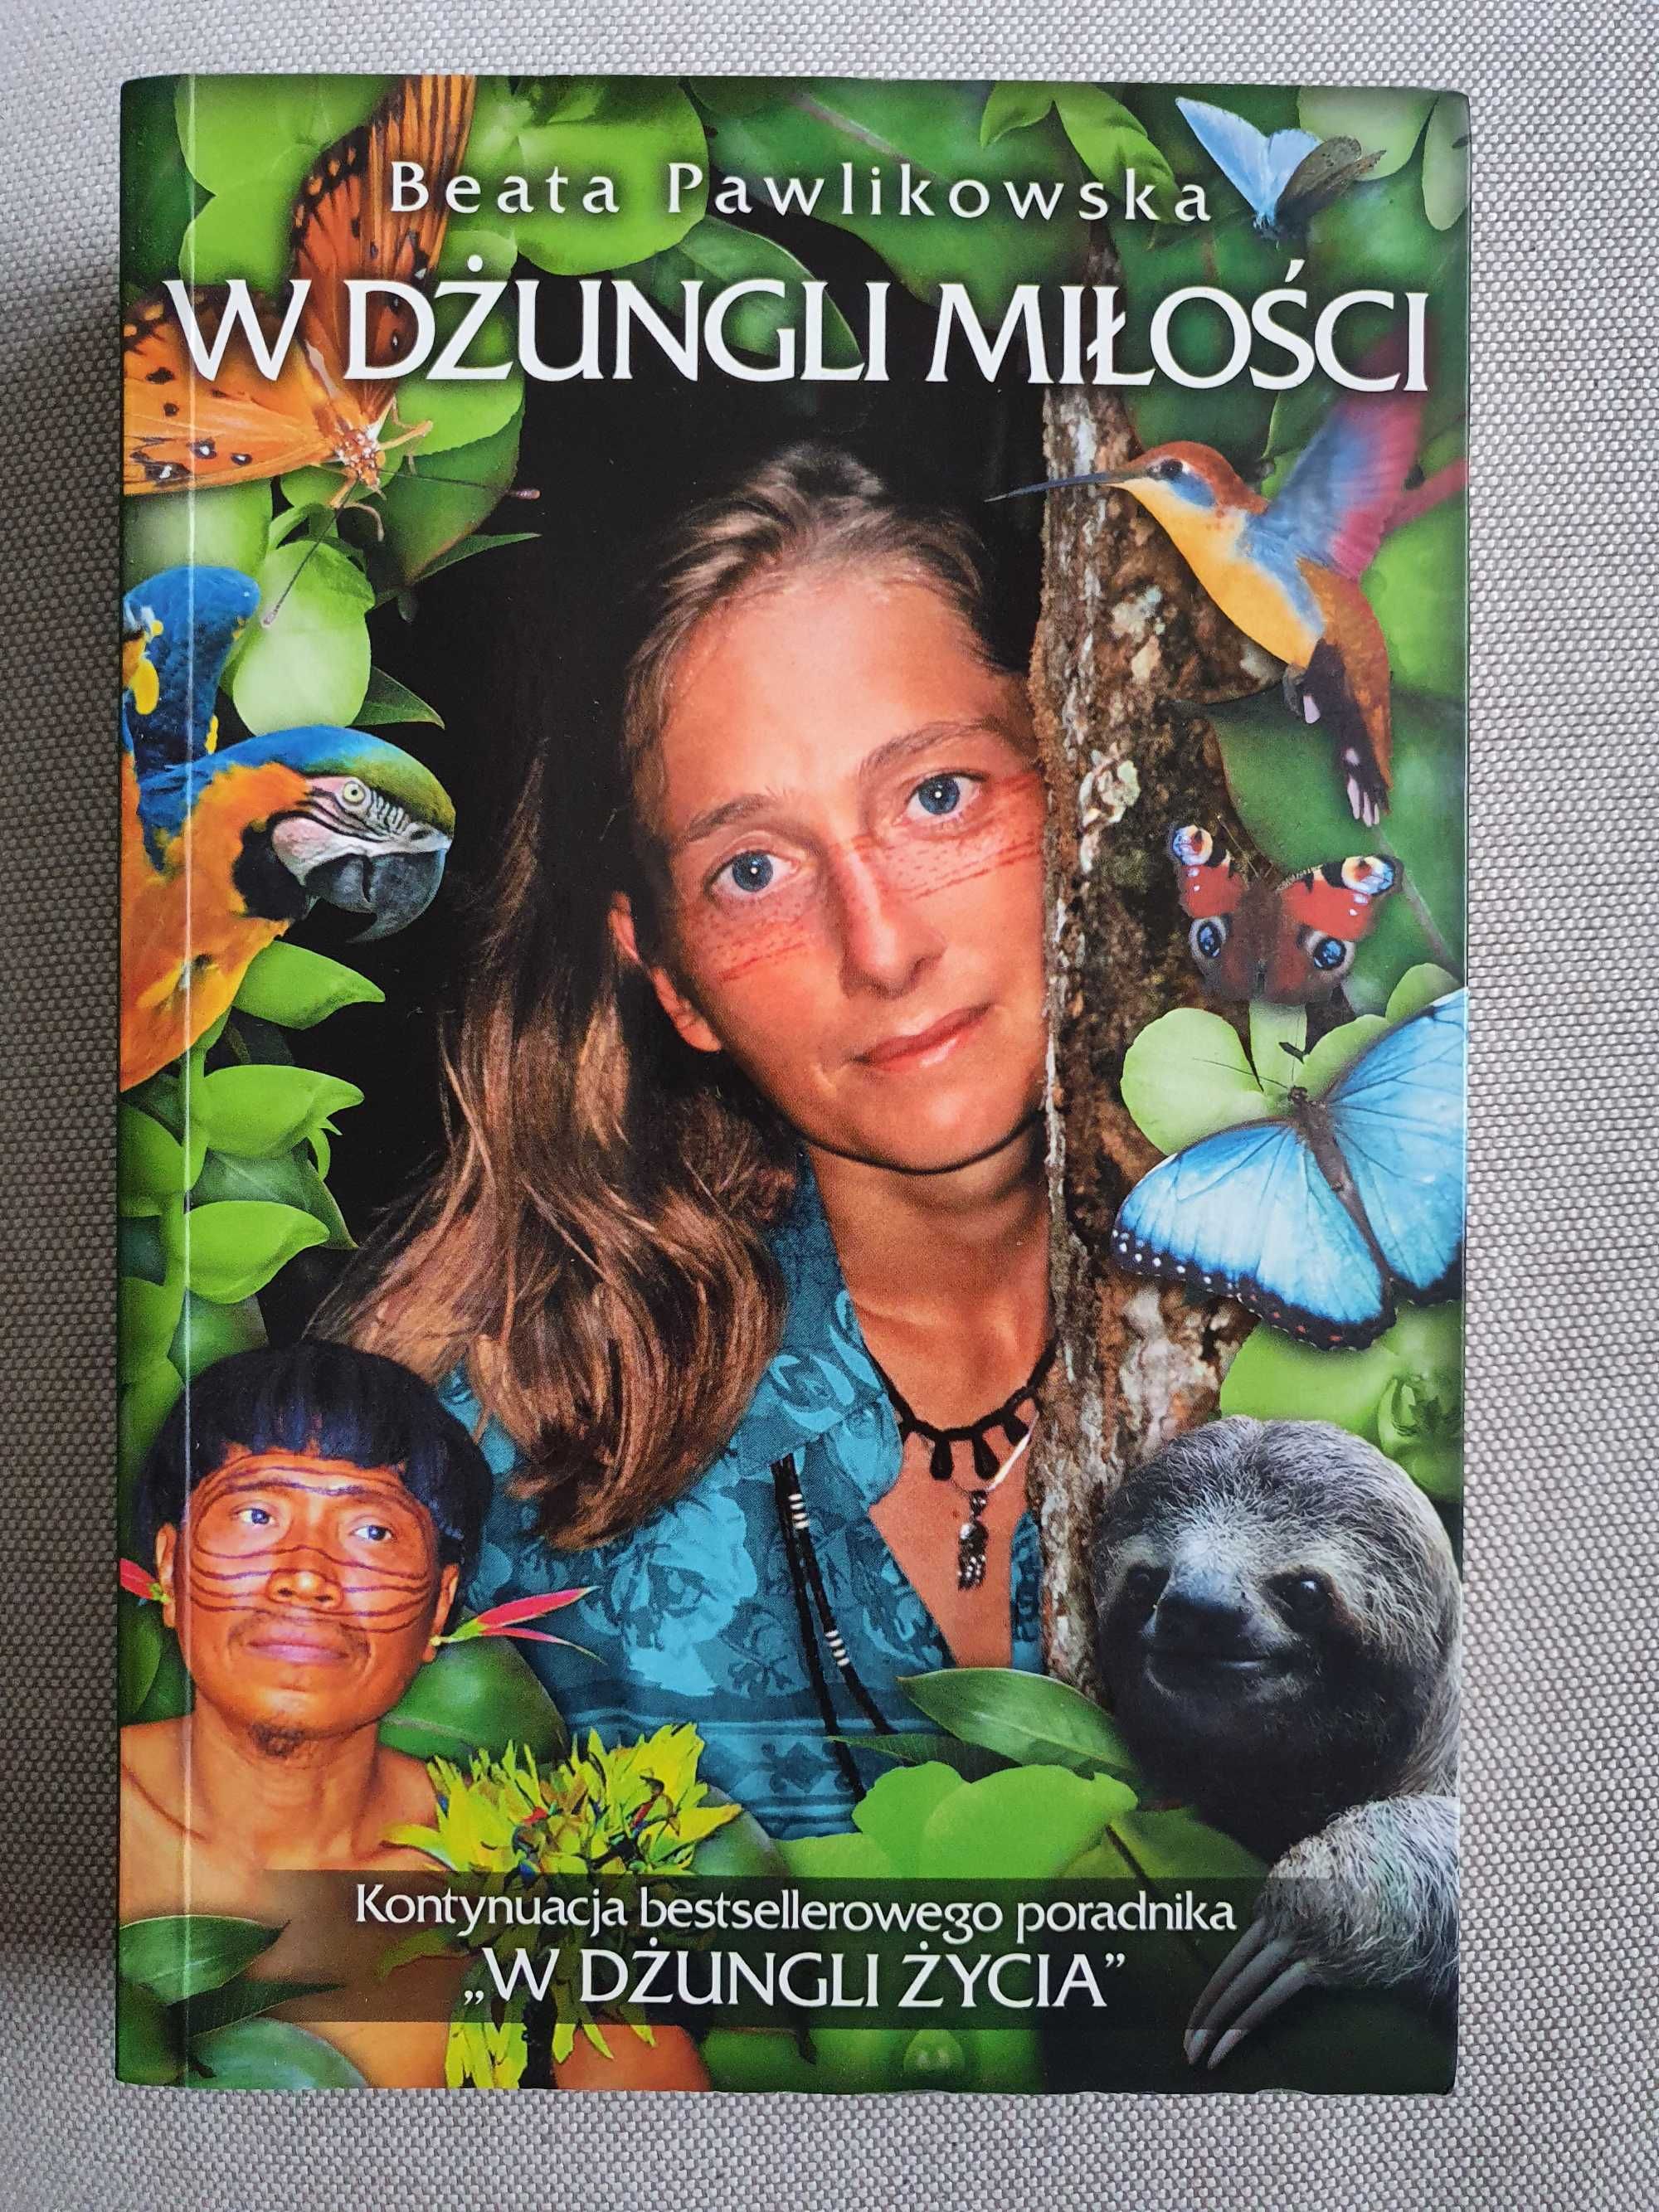 W dżungli miłości  autor Beata Pawlikowska książka